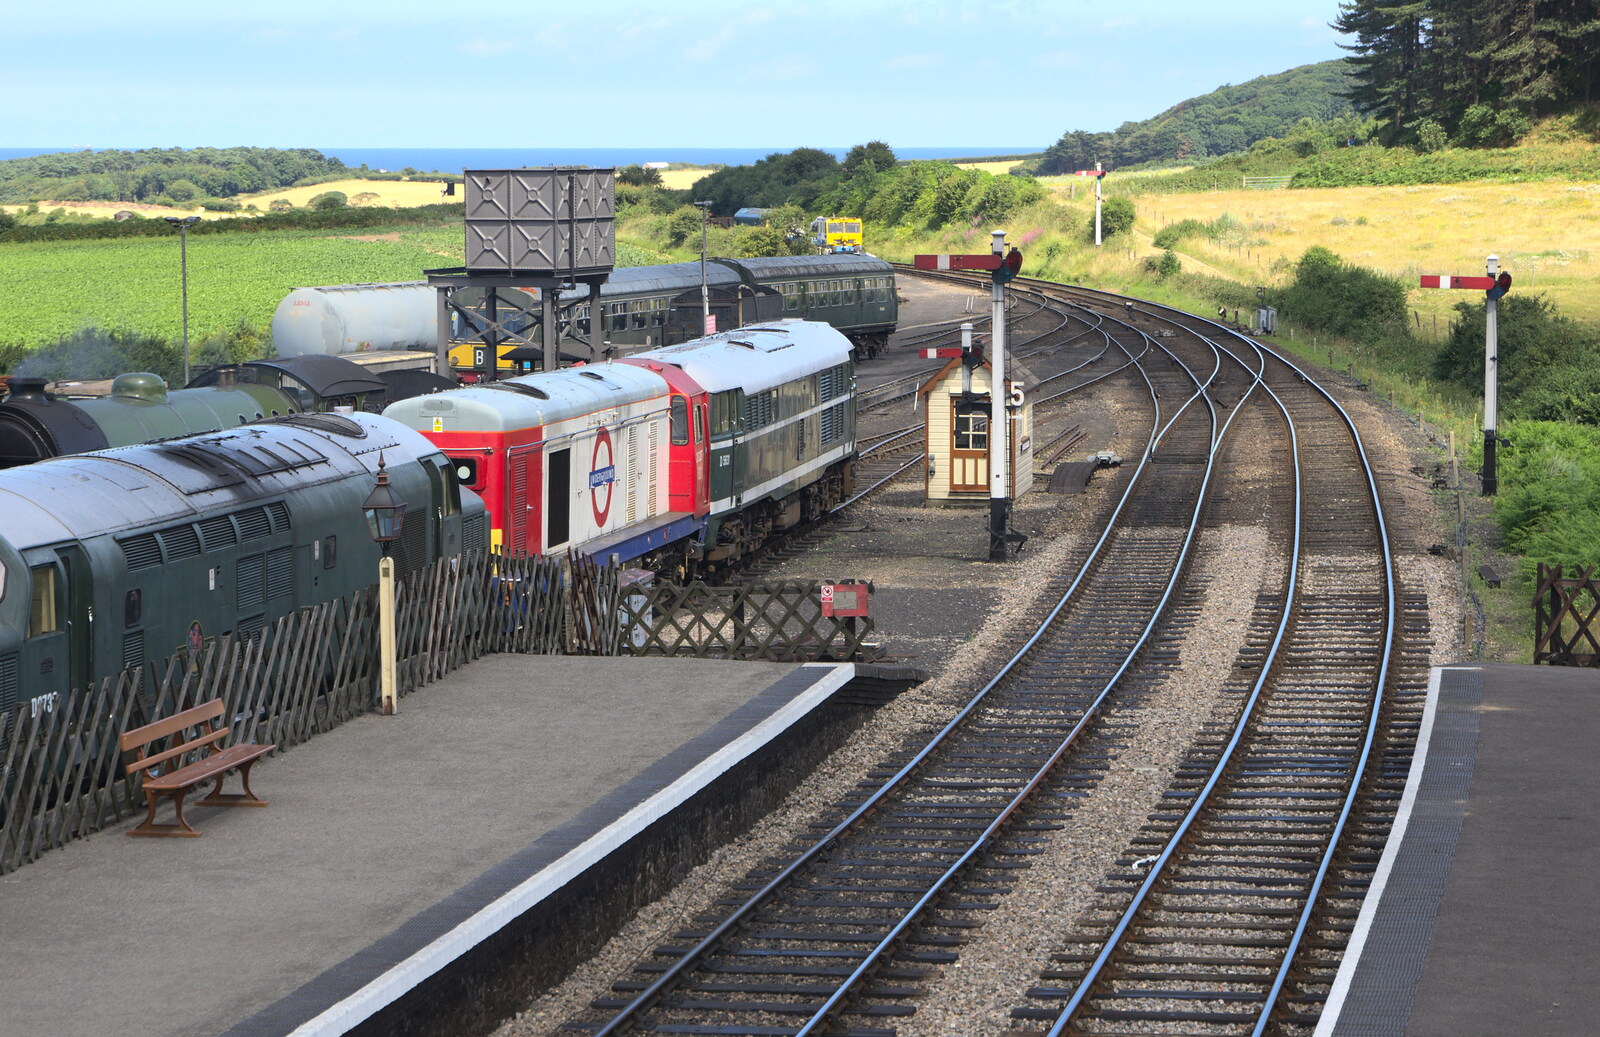 Vintage trains at Weybourne from Sheringham Steam, Sheringham, North Norfolk - 31st July 2016